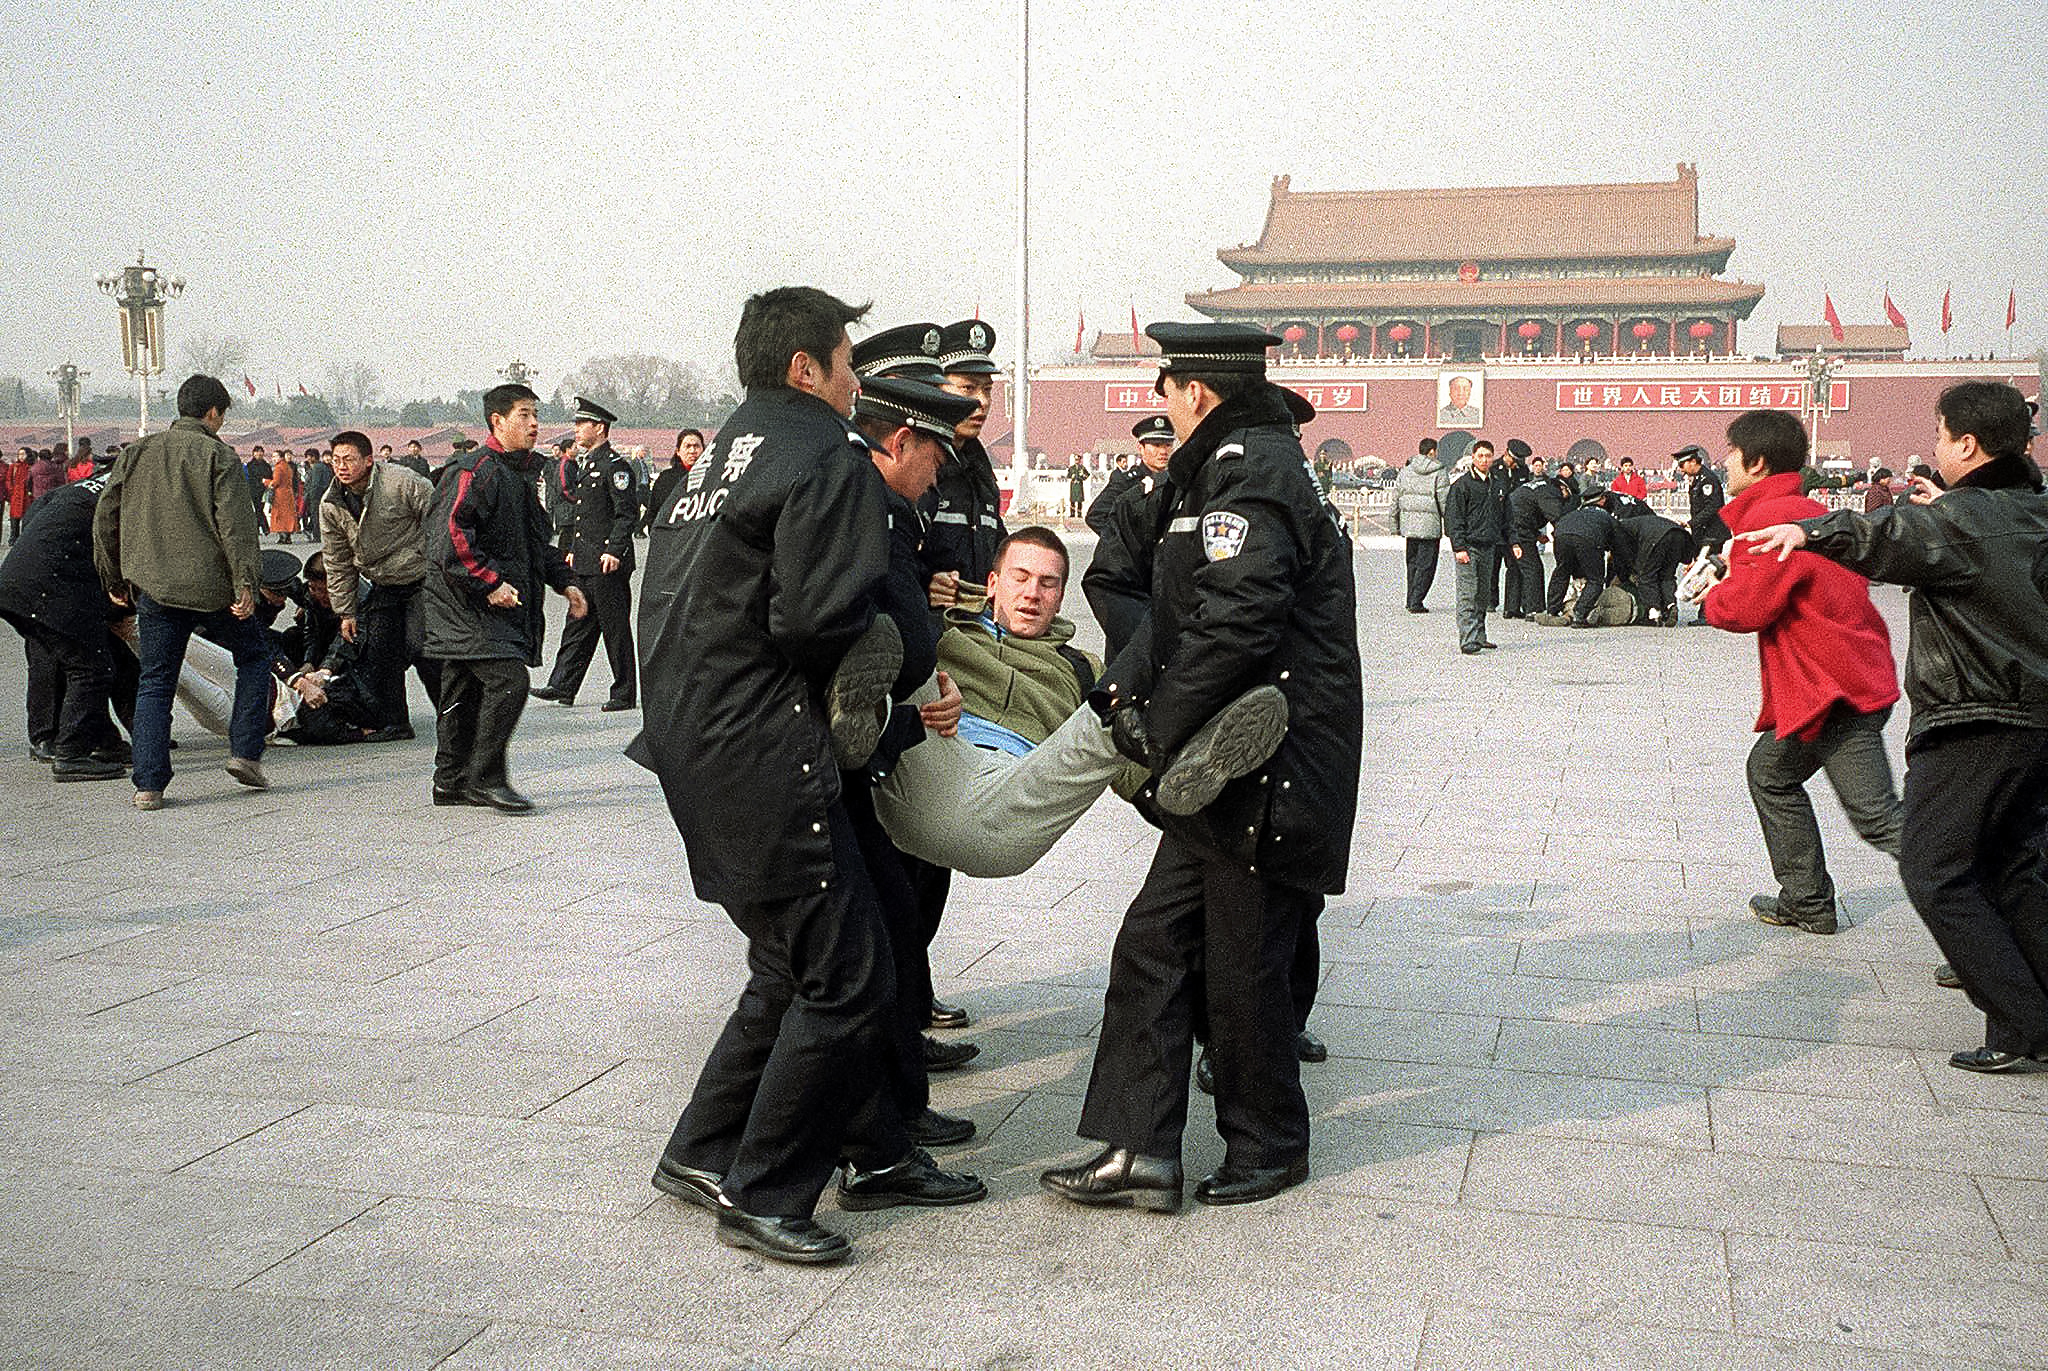 Công an trấn áp và bắt giữ các học viên Pháp Luân Công tại Quảng trường Thiên An Môn vào ngày 14/02/2002. (Ảnh: Frederic Brown/AFP qua Getty Images)